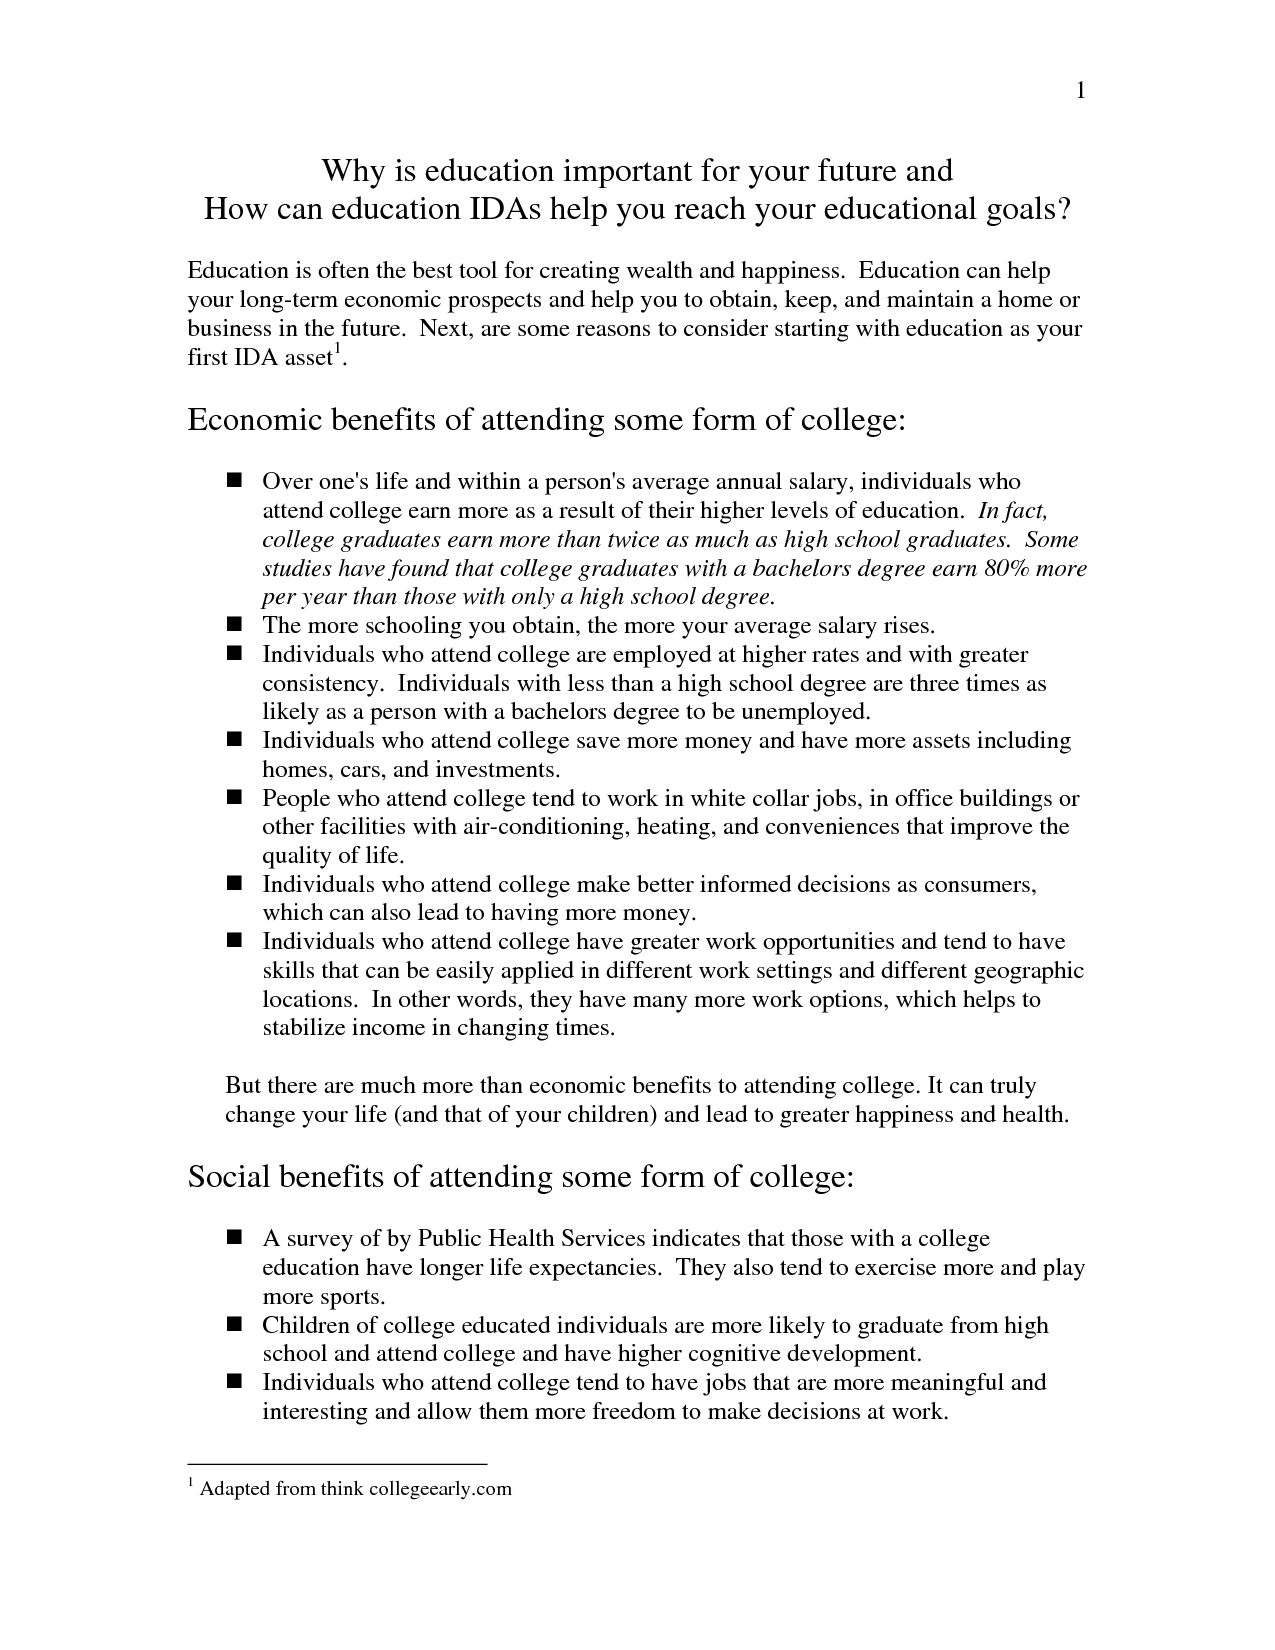 Essays on college education